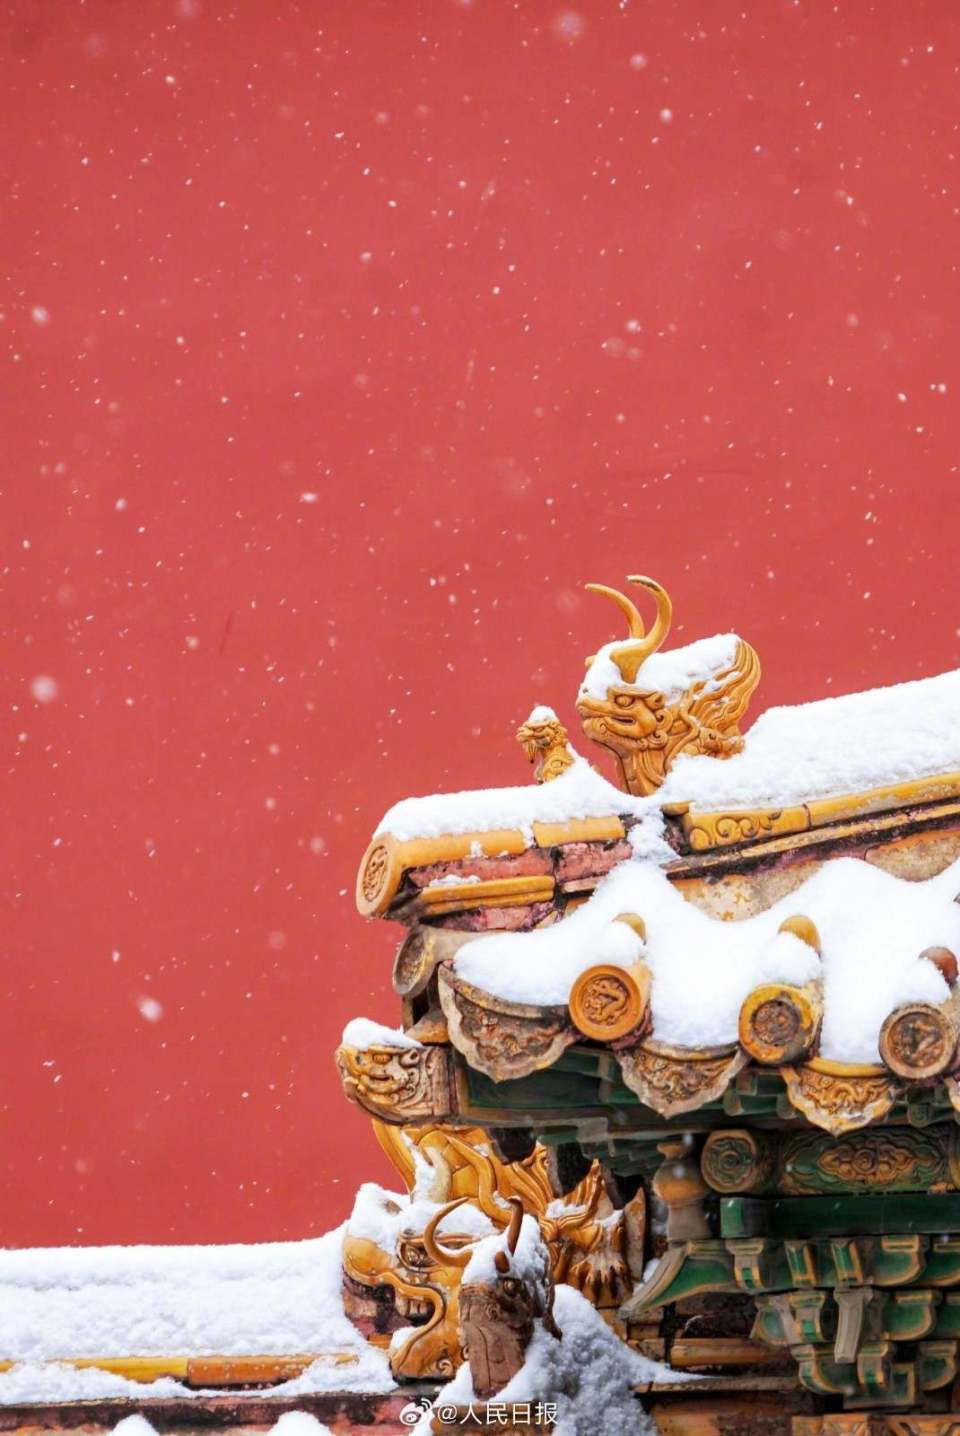 故宫雪景唯美图片高清图片